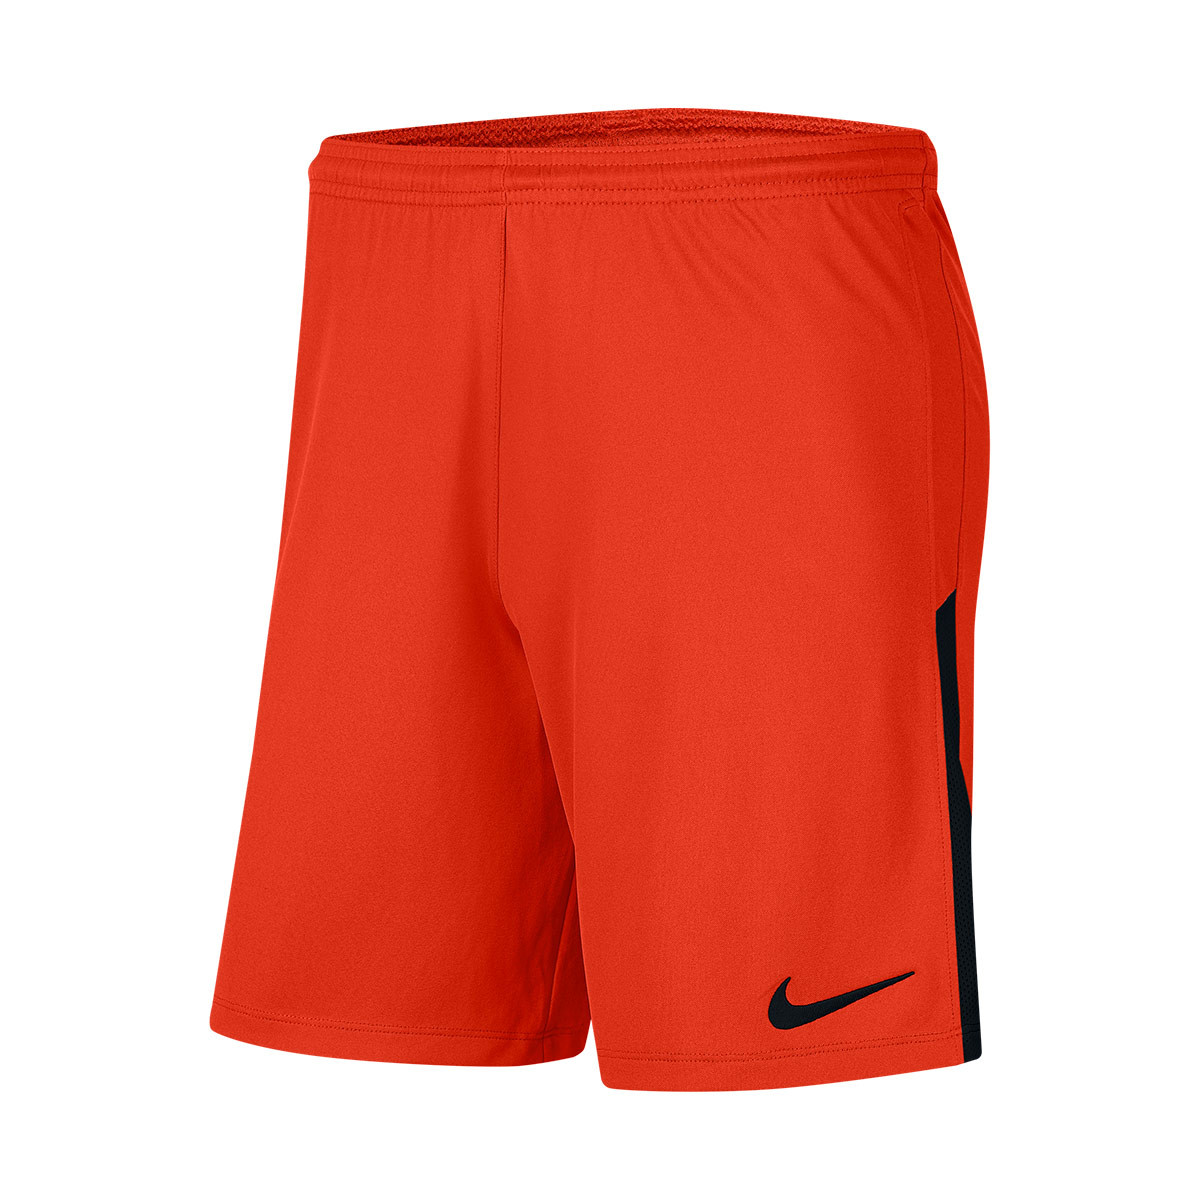 orange black and white nike shorts